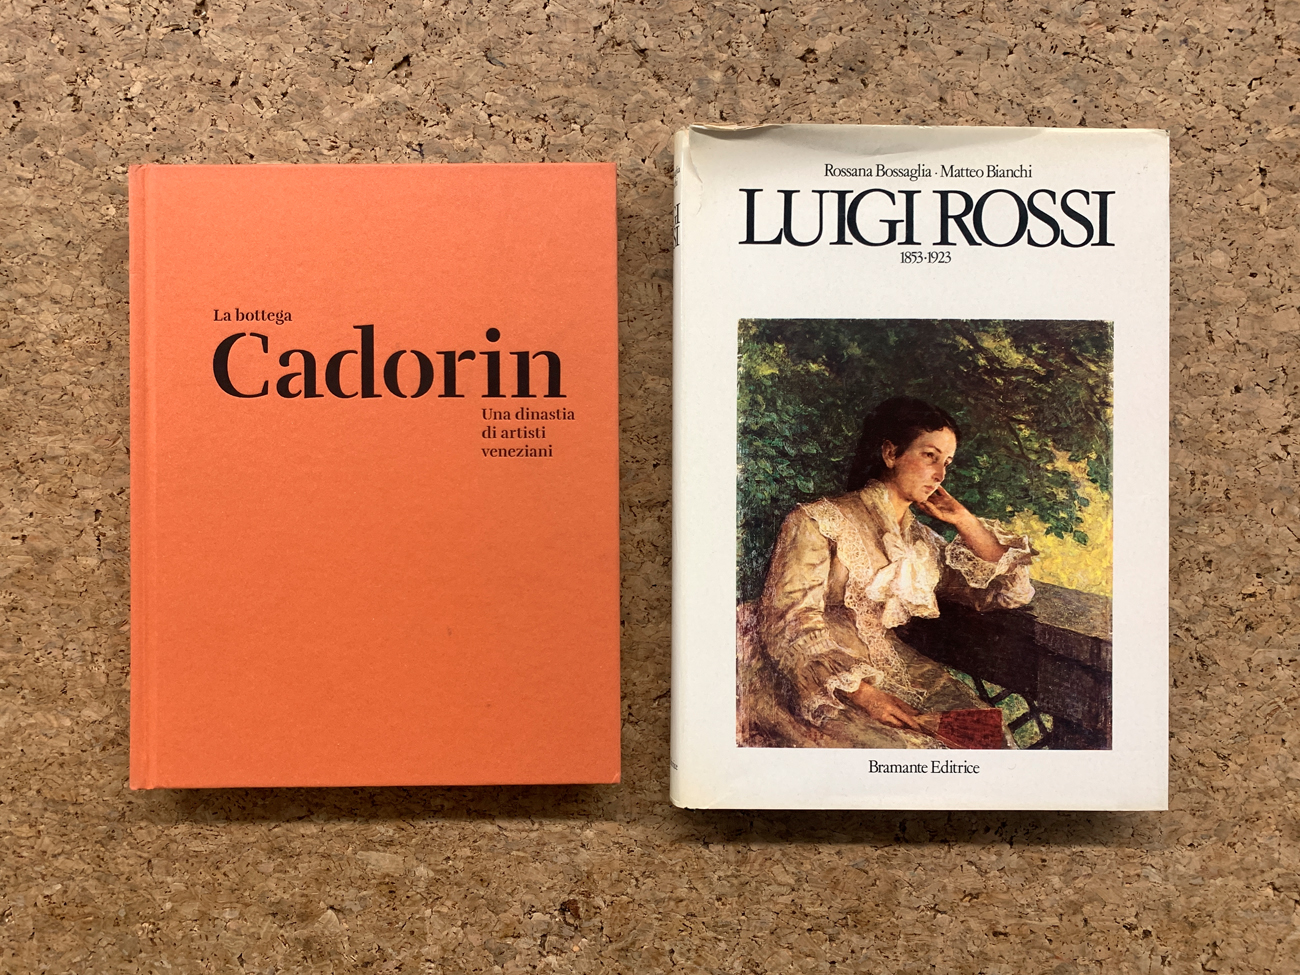 BOTTEGA CADORIN E LUIGI GROSSI - Lotto unico di 2 cataloghi